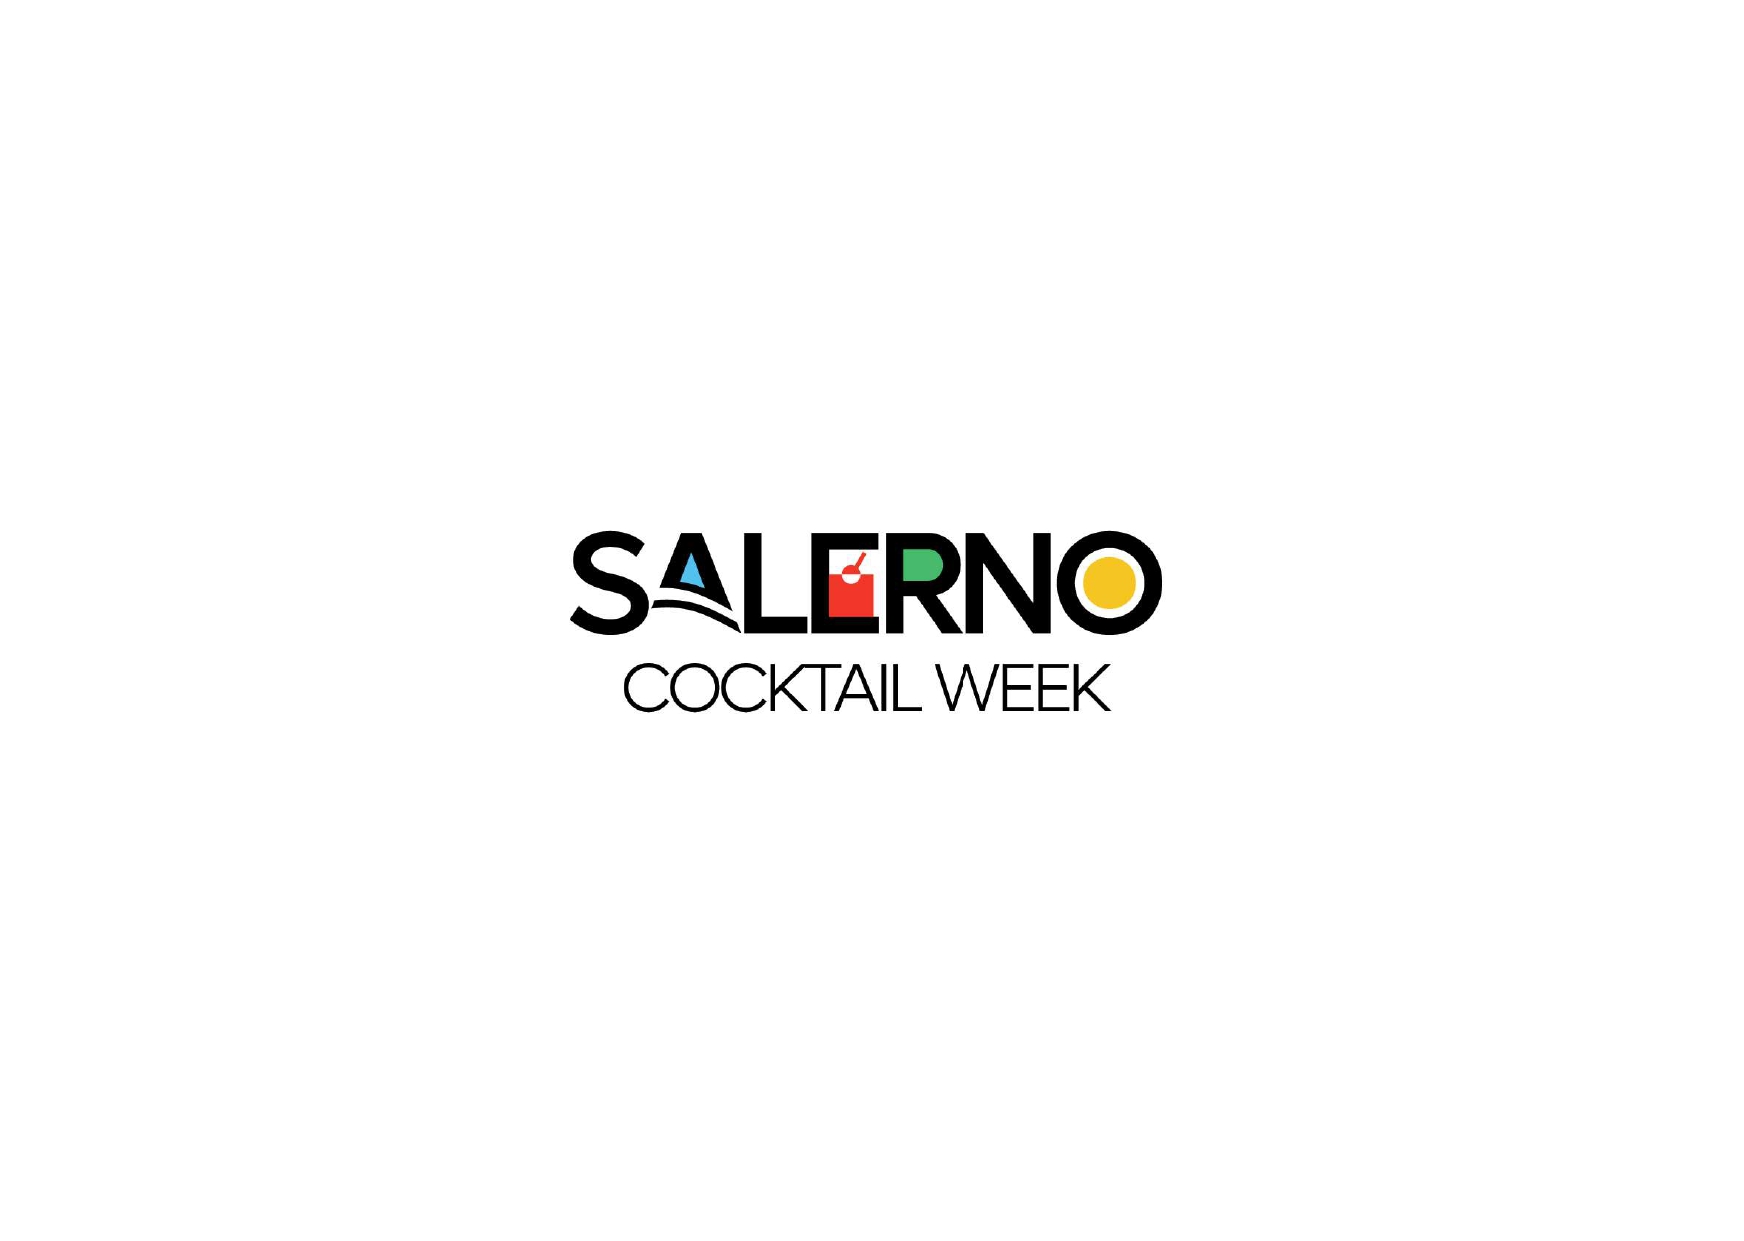 Dal 14 al 21 Aprile arriva la Salerno Cocktail Week